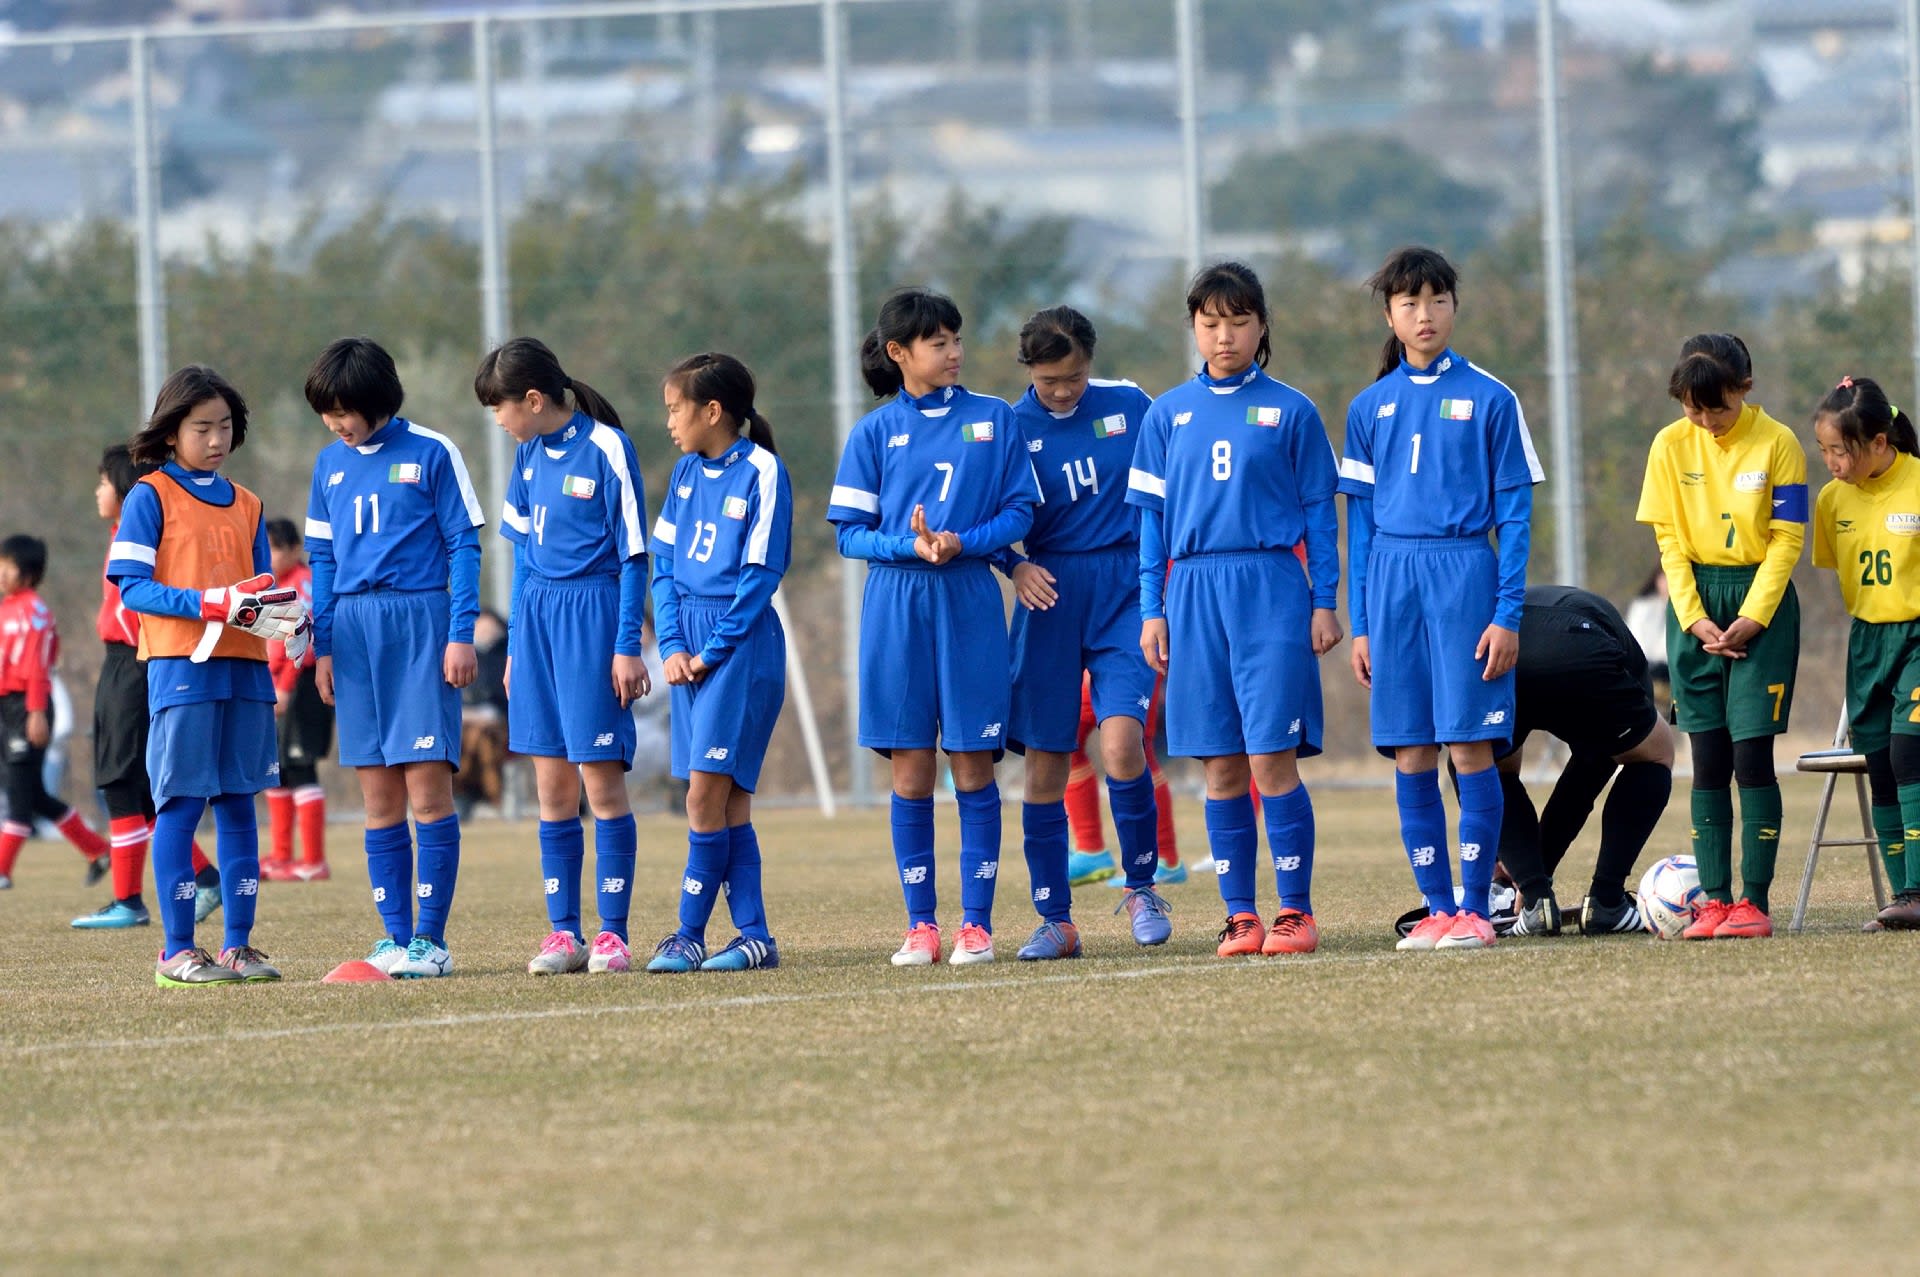 愛知県小学生女子サッカー選手権大会 決勝トーナメント 3位決定戦 Mickeyの徒然なるままに